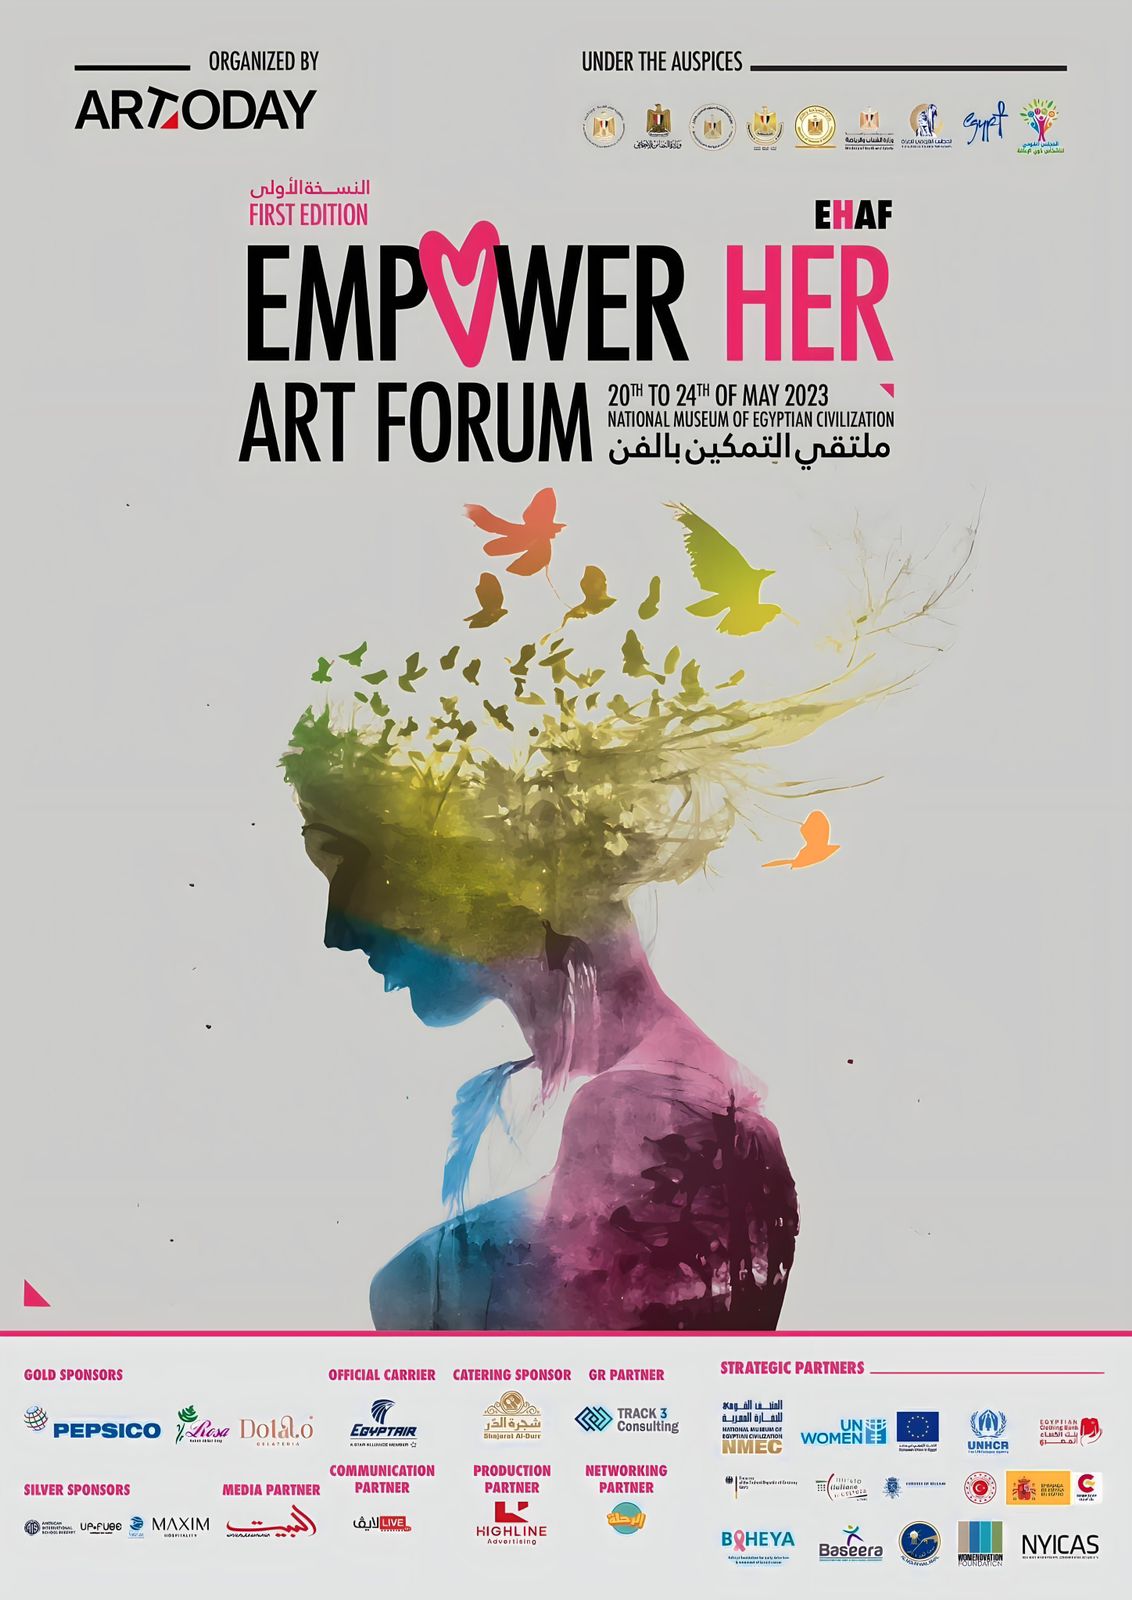 Empower Her Art Forum